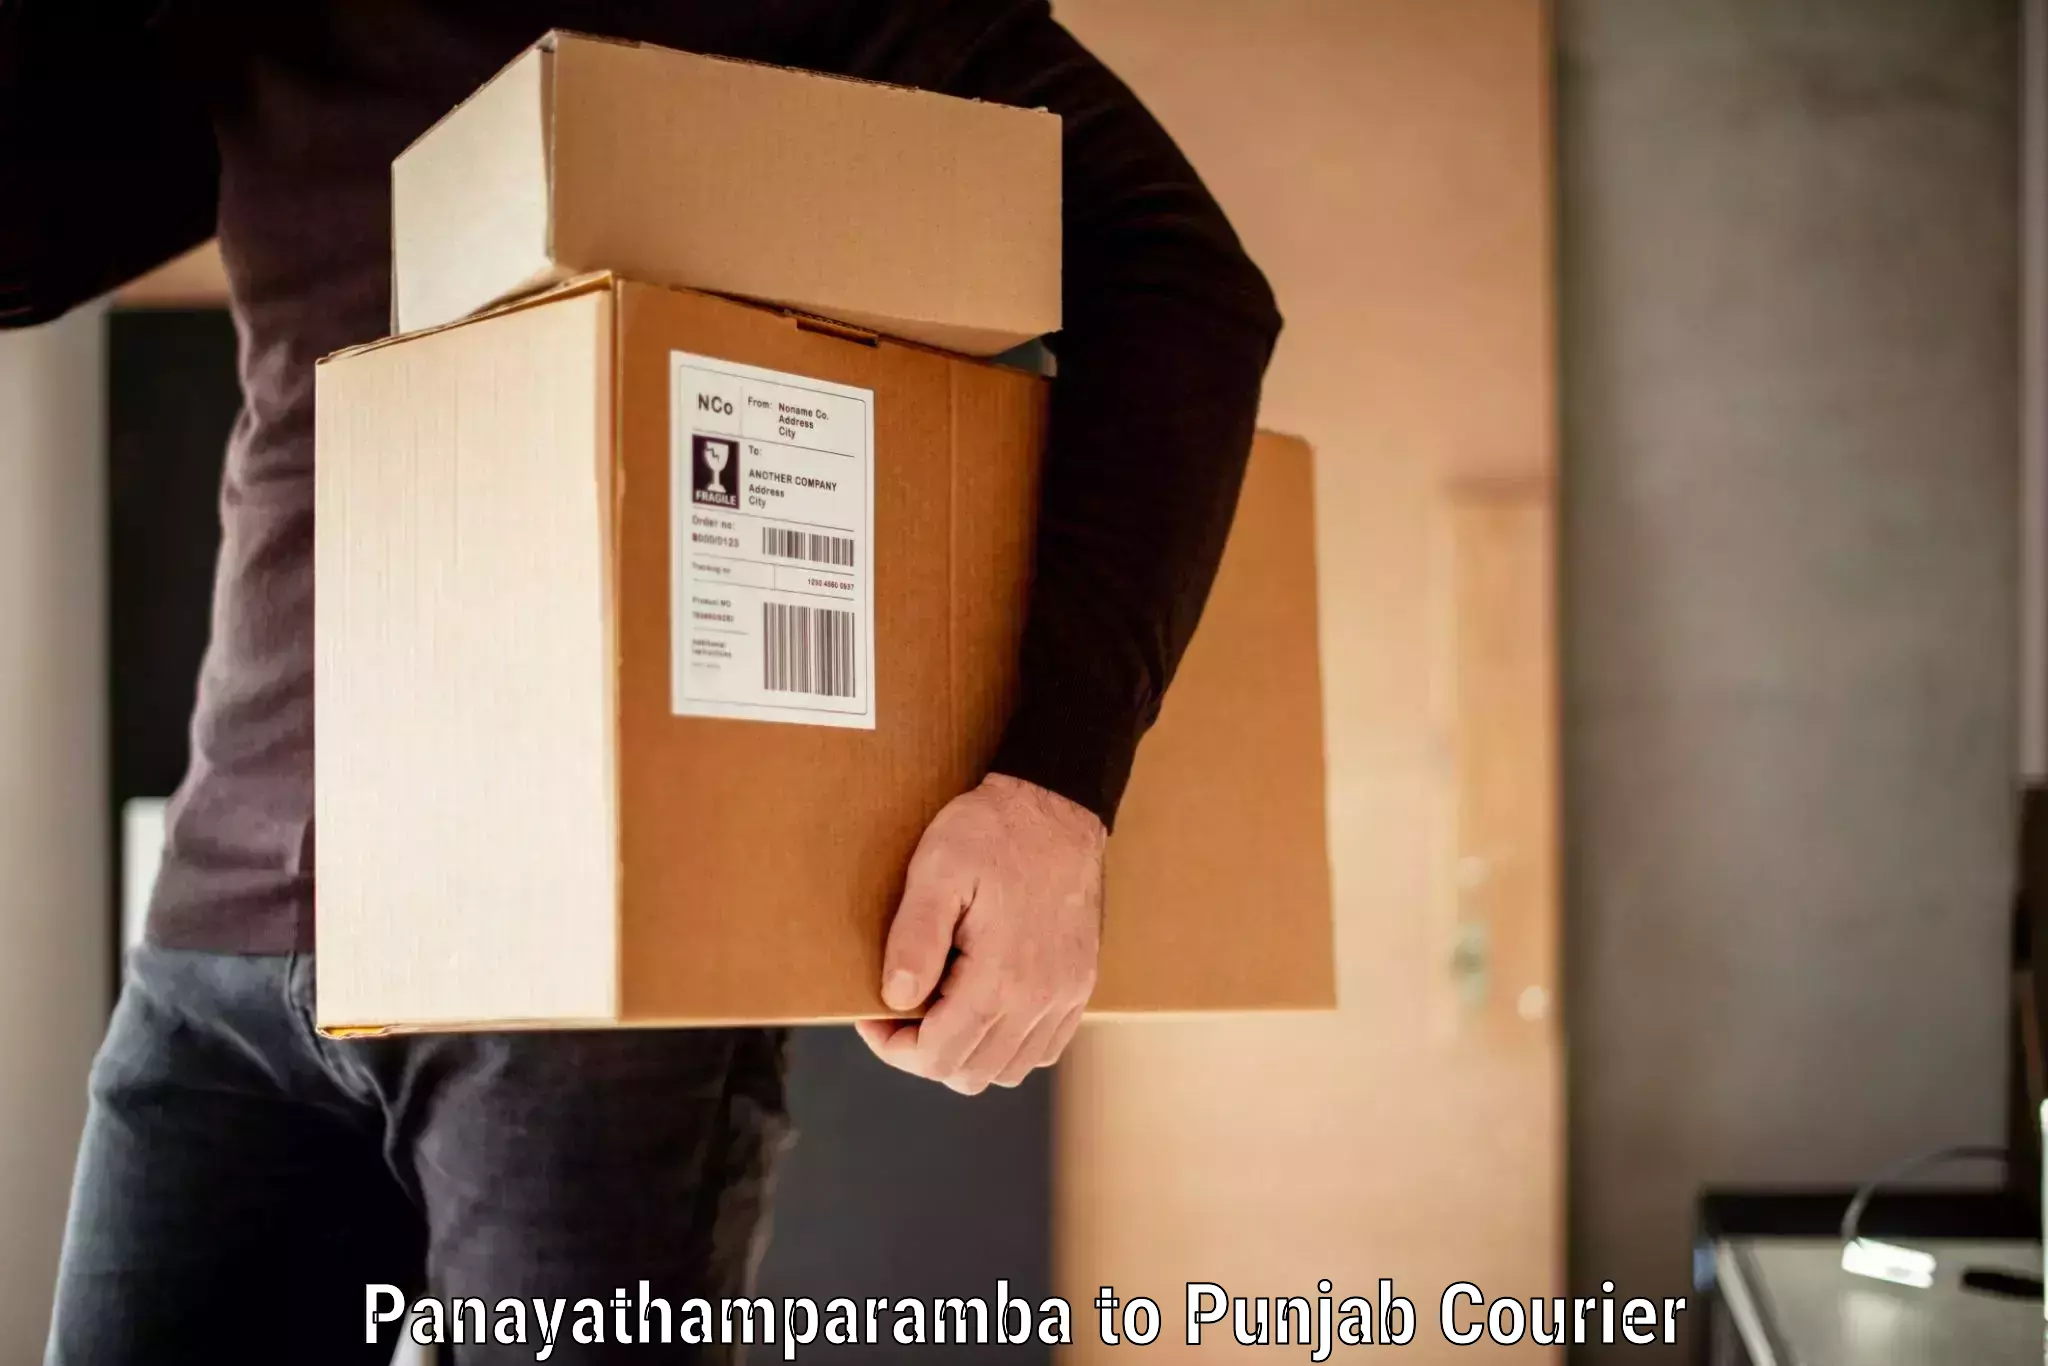 Baggage shipping rates calculator Panayathamparamba to Punjab